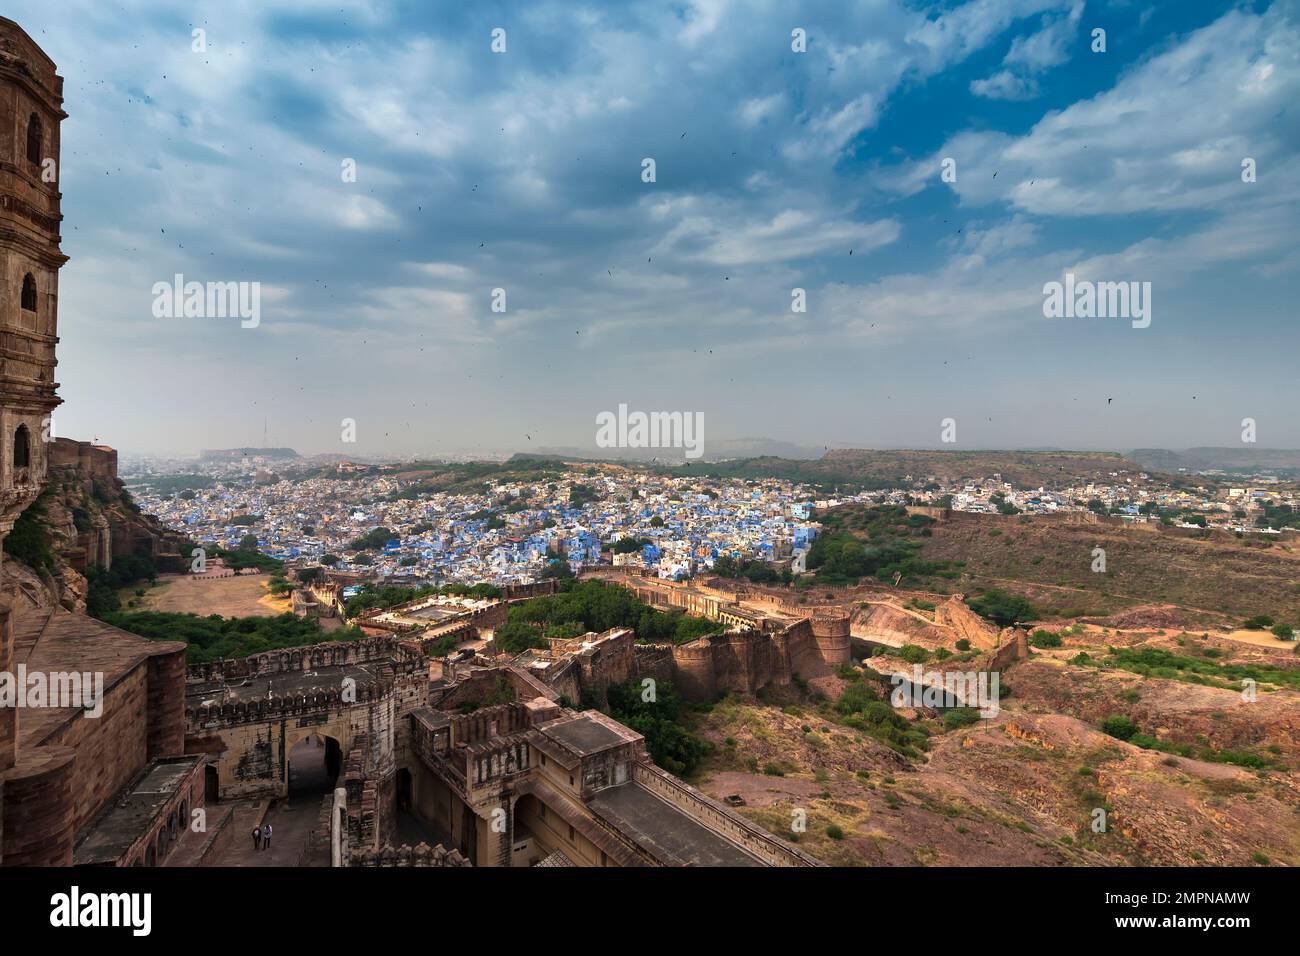 Blick auf die Festung Mehrangarh mit Fernsicht auf die blaue Stadt Jodhpur, Rajasthan, Indien. Das historische Fort ist UNESCO-Weltkulturerbe. Blauer Himmel, Wolken. Stockfoto